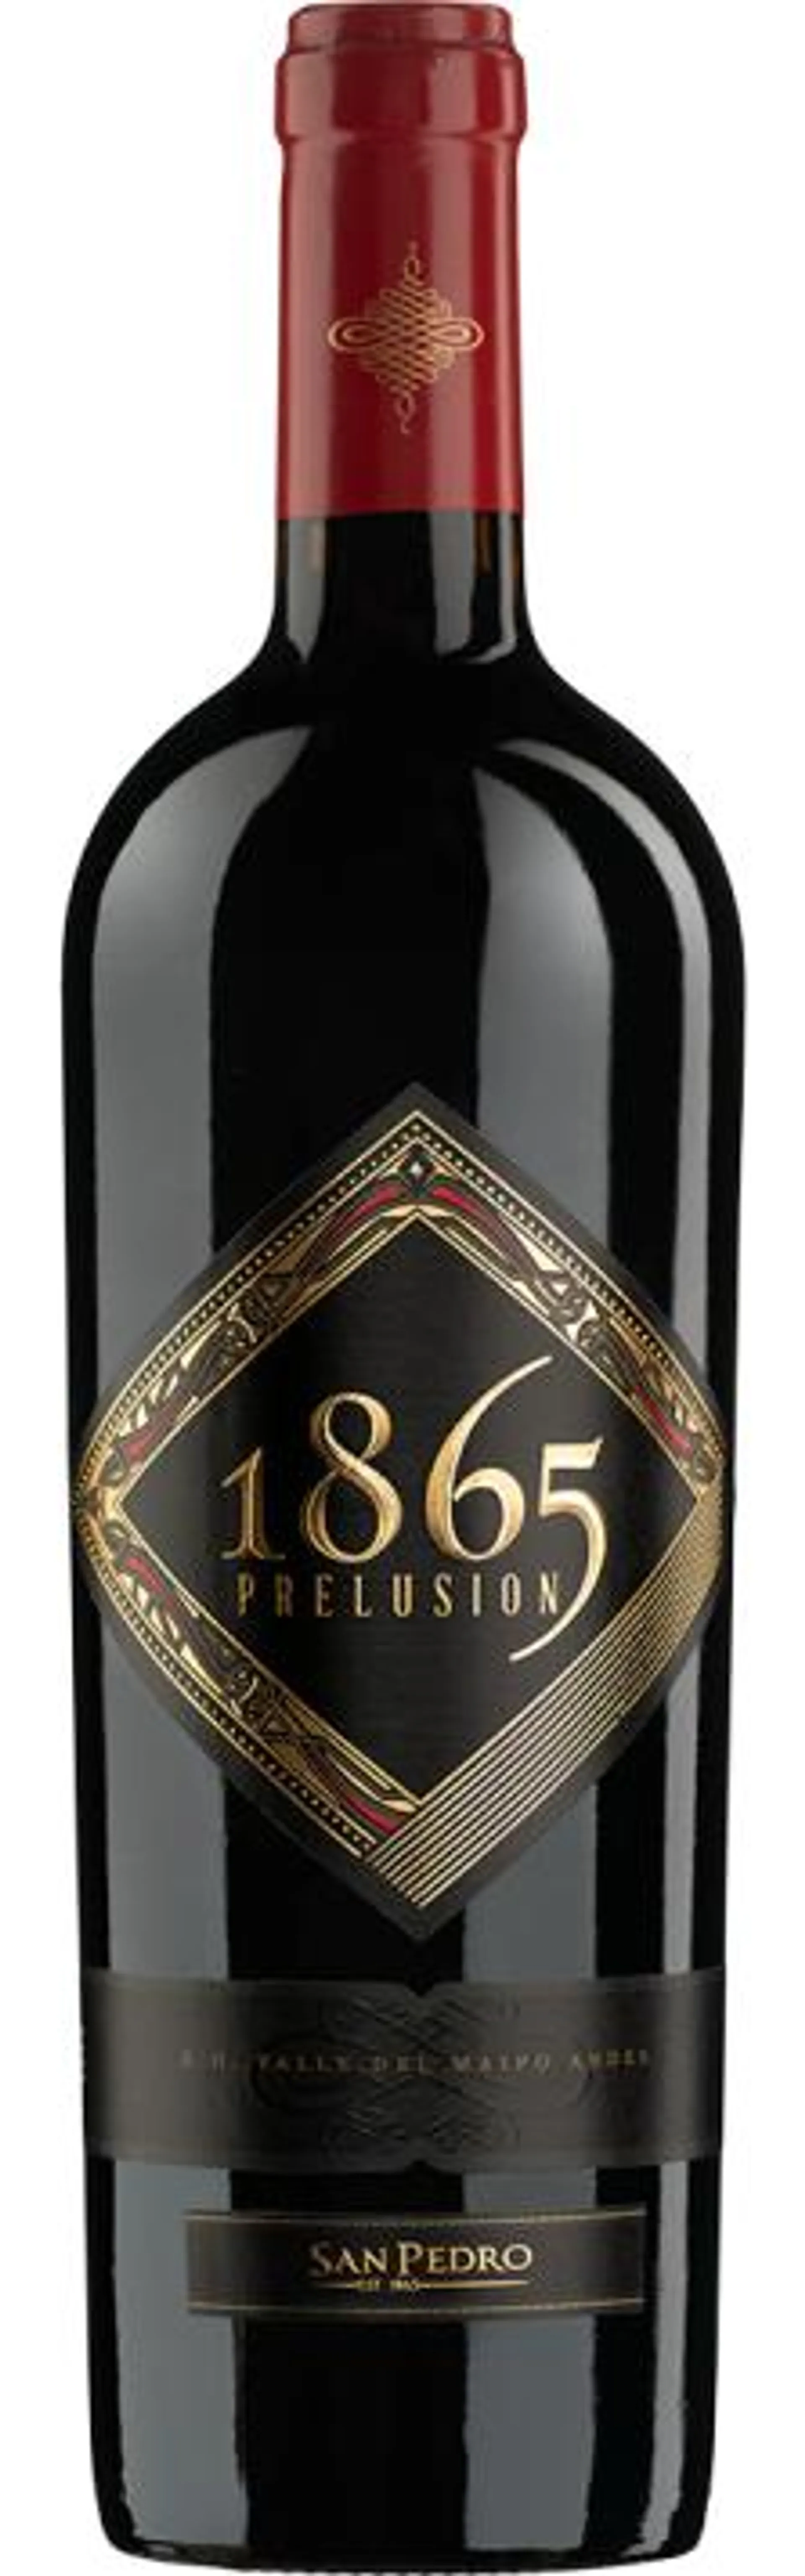 2019 Prelusion 1865